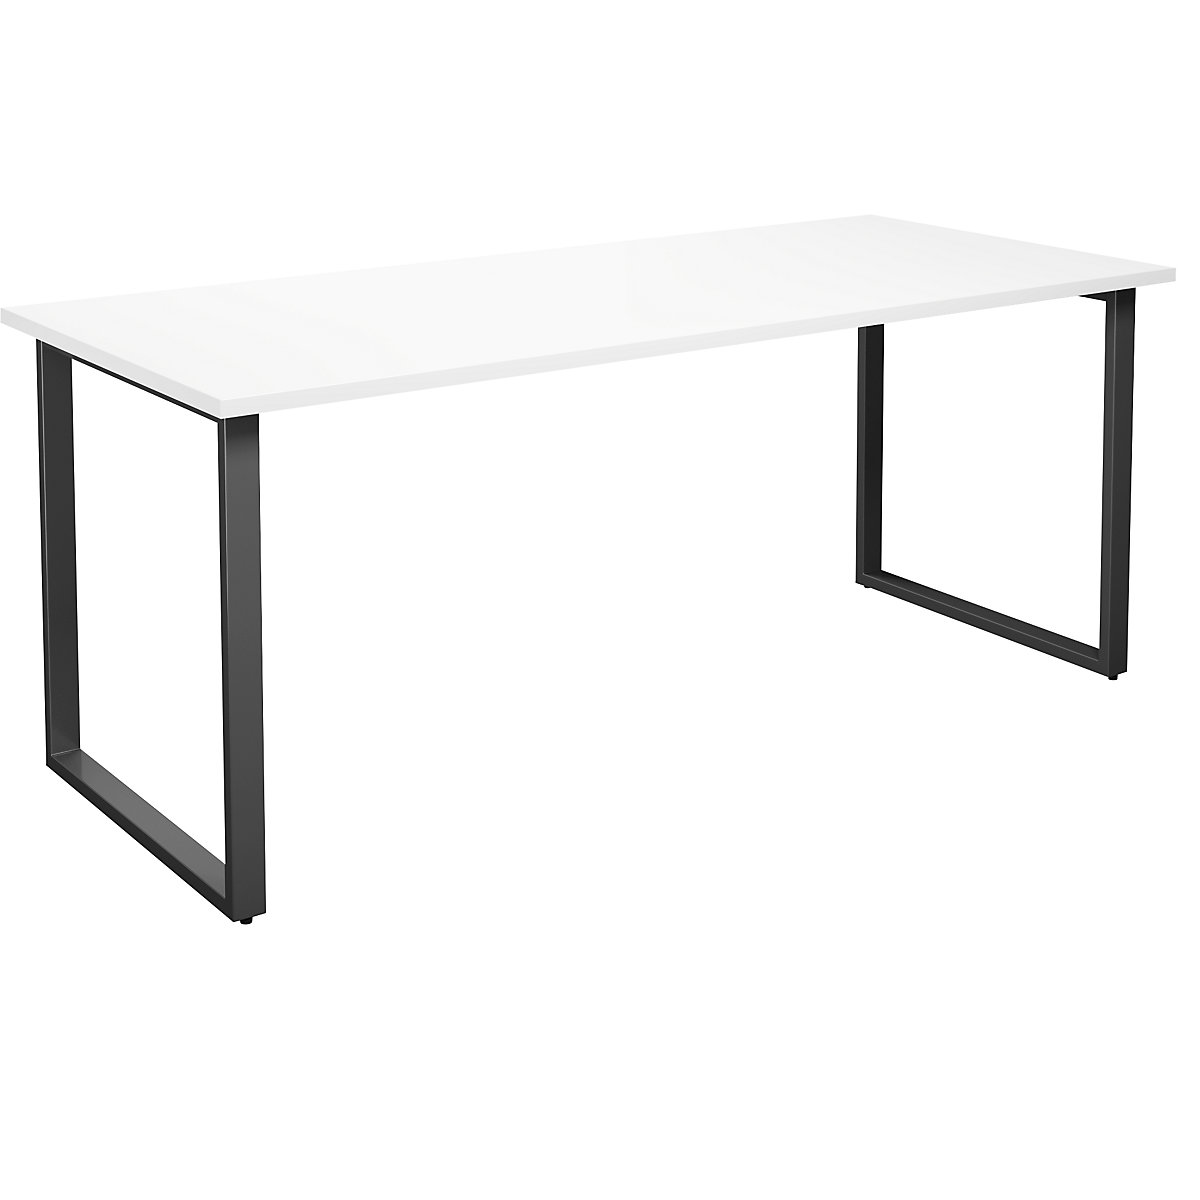 DUO-O multi-purpose desk, straight tabletop, WxD 1800 x 800 mm, white, black-6